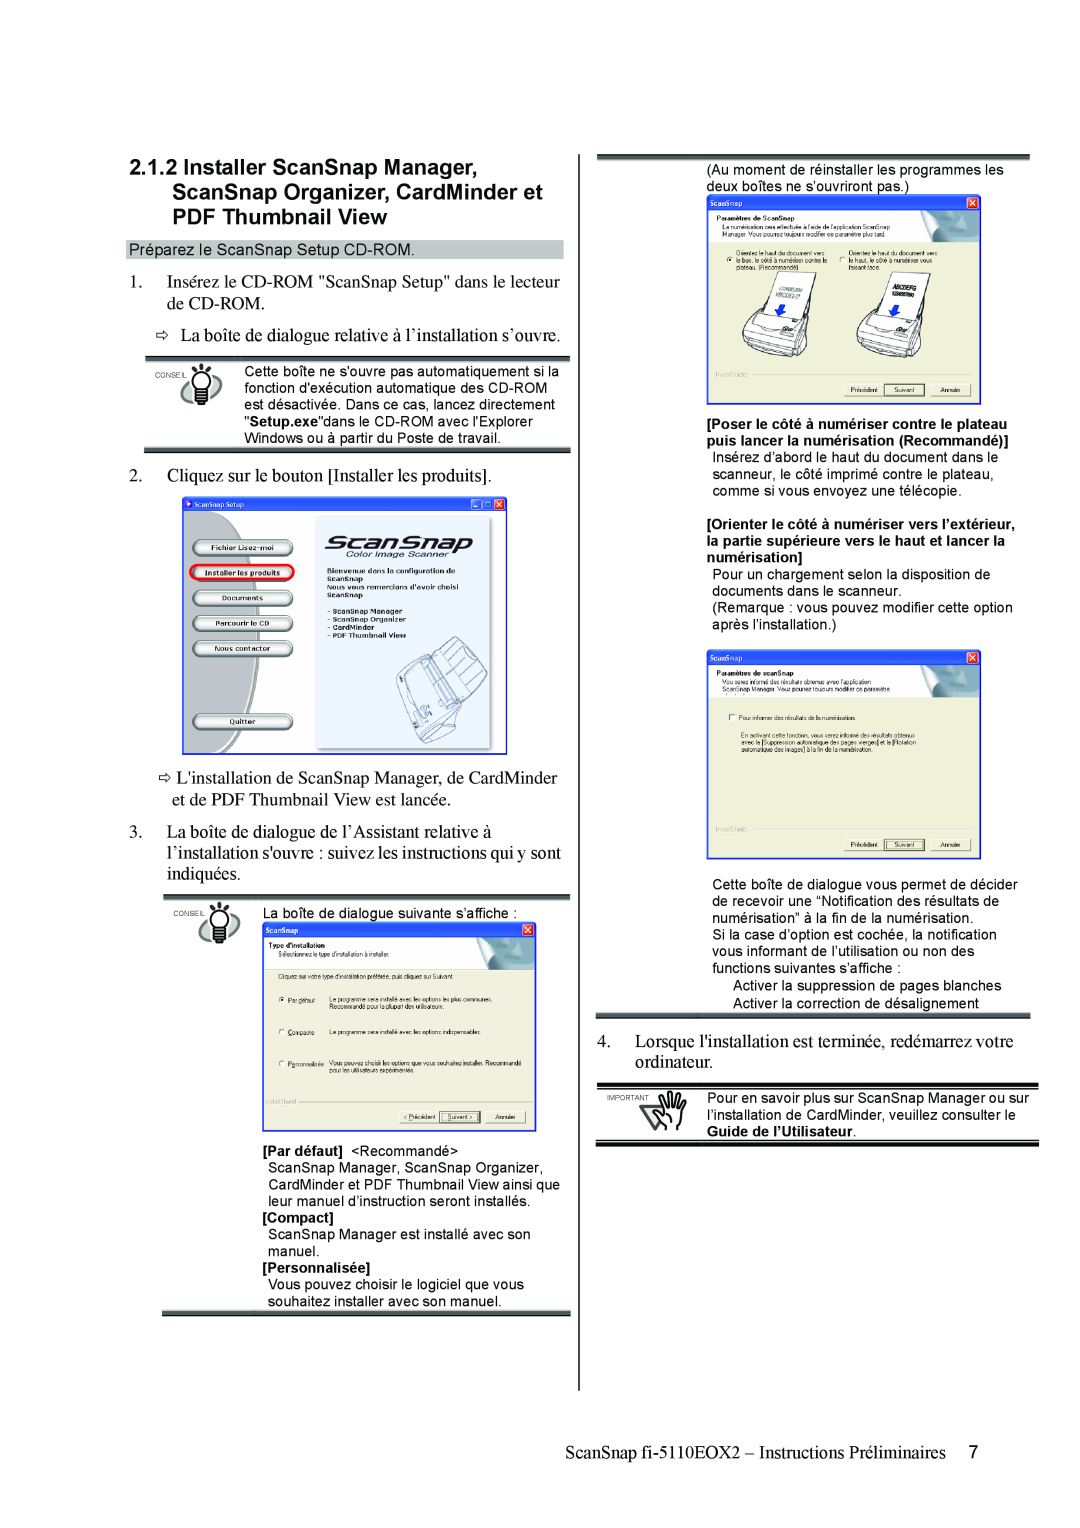 Fujitsu fi-5110EOX2 manual Préparez le ScanSnap Setup CD-ROM, Par défaut Recommandé, Compact, Personnalisée 